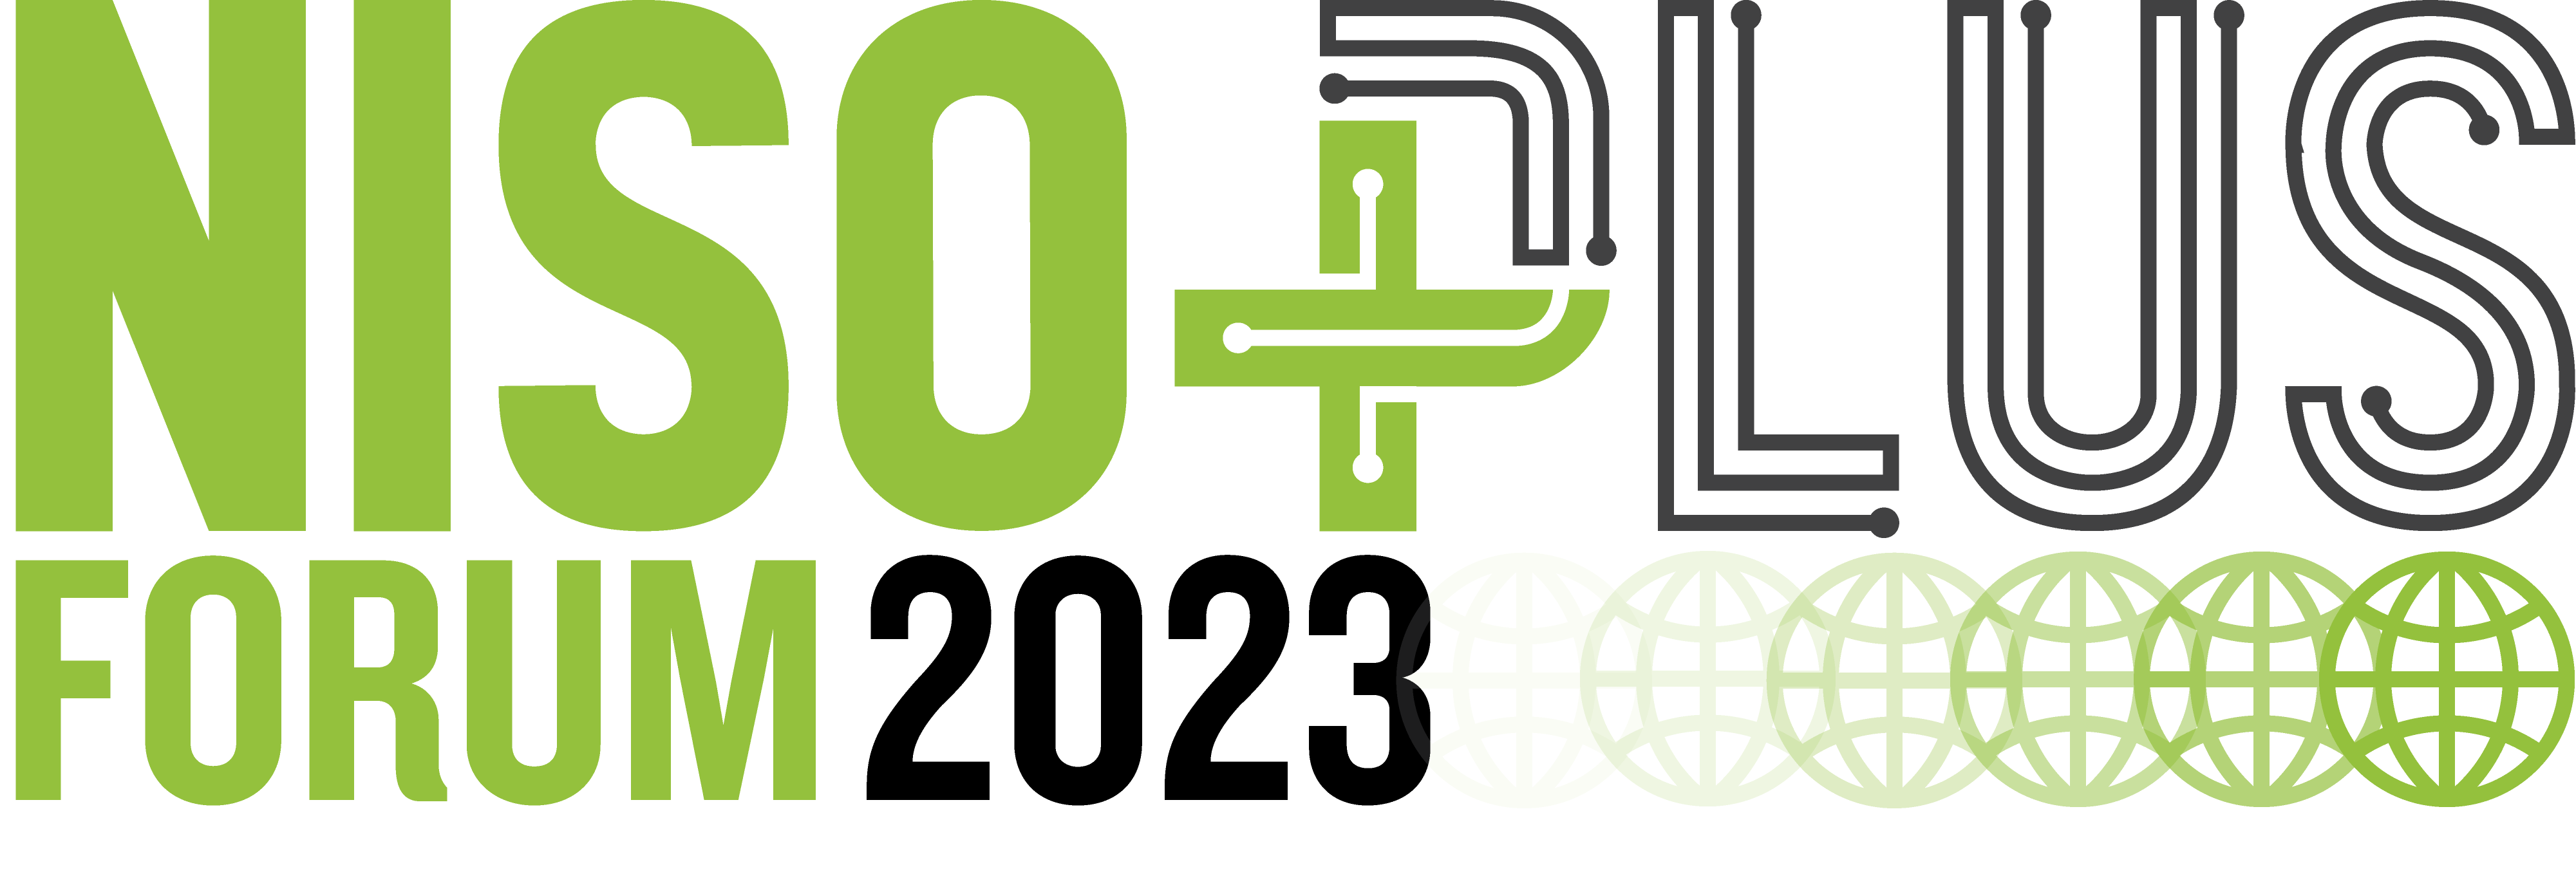 Second Chances 2022 Challenge - Forums 